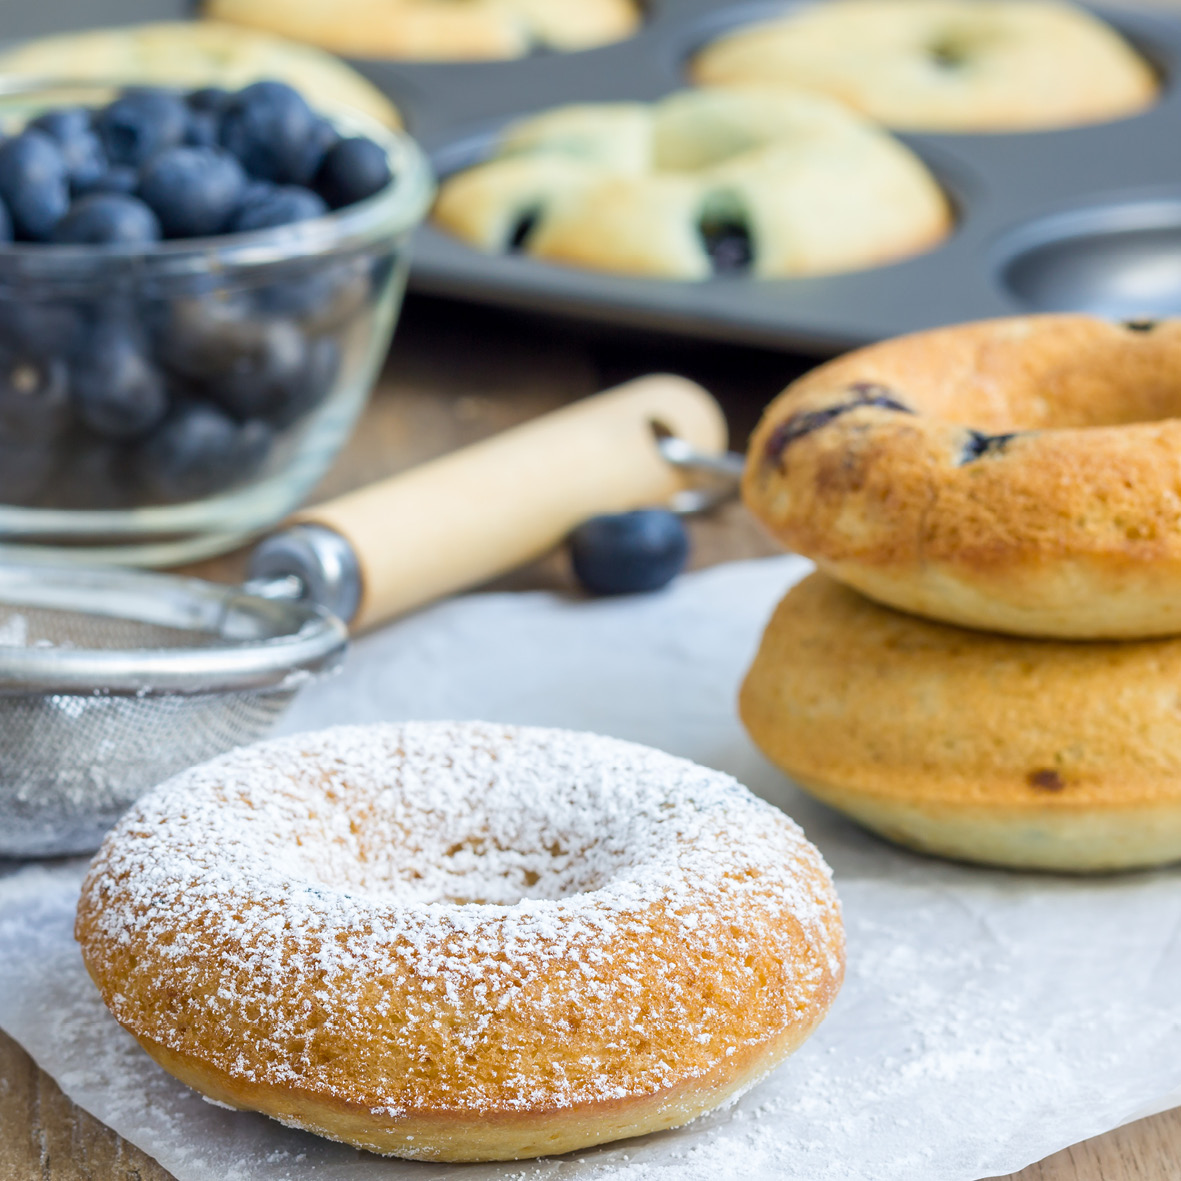 baked_blueberry_doughnuts.jpg